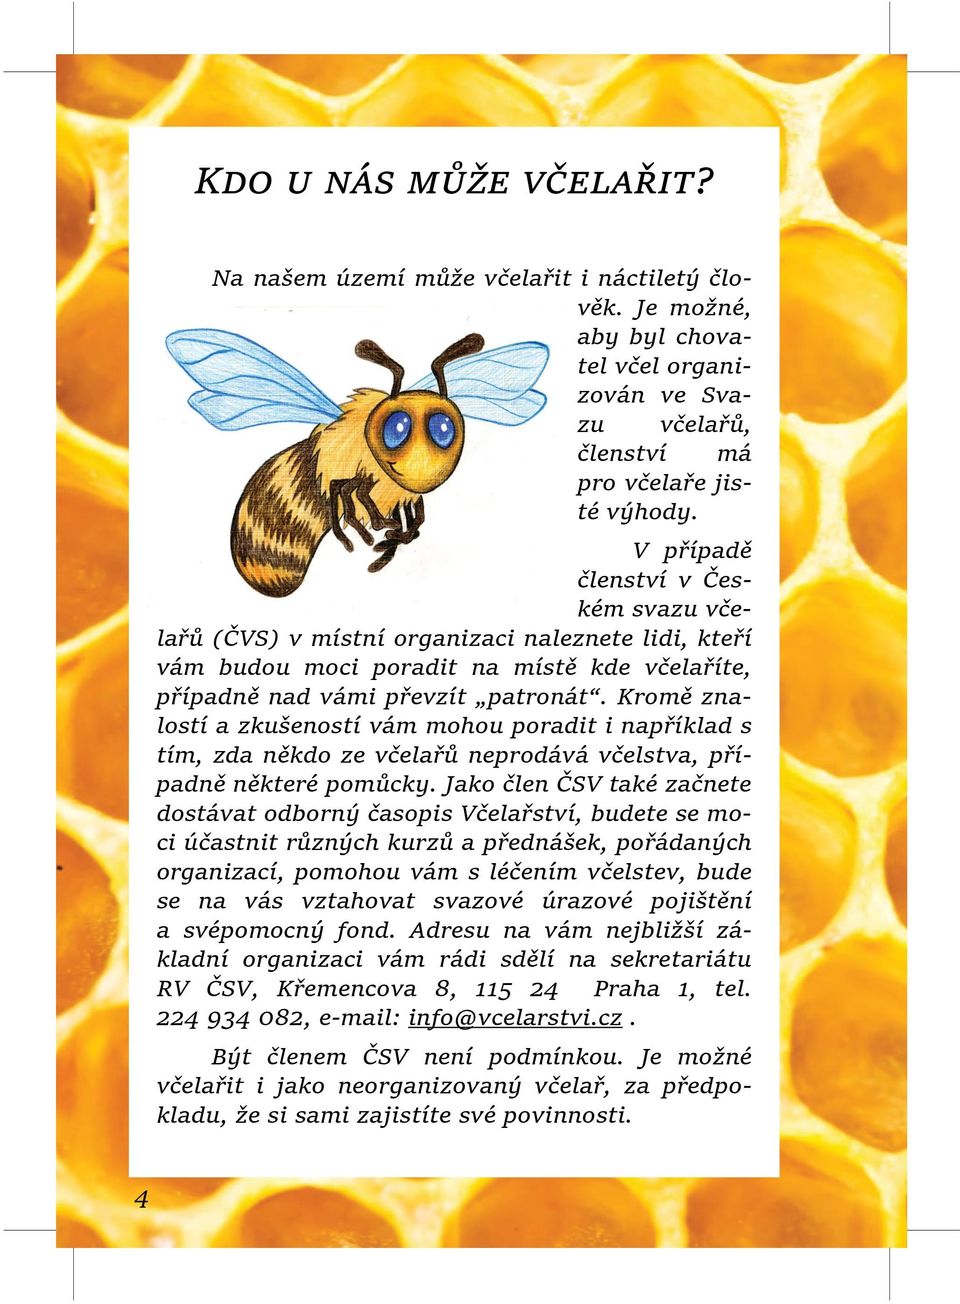 Kromě zna lostí a zkušeností vám mohou poradit i například s tím, zda někdo ze včelařů neprodává včelstva, pří padně některé pomůcky.